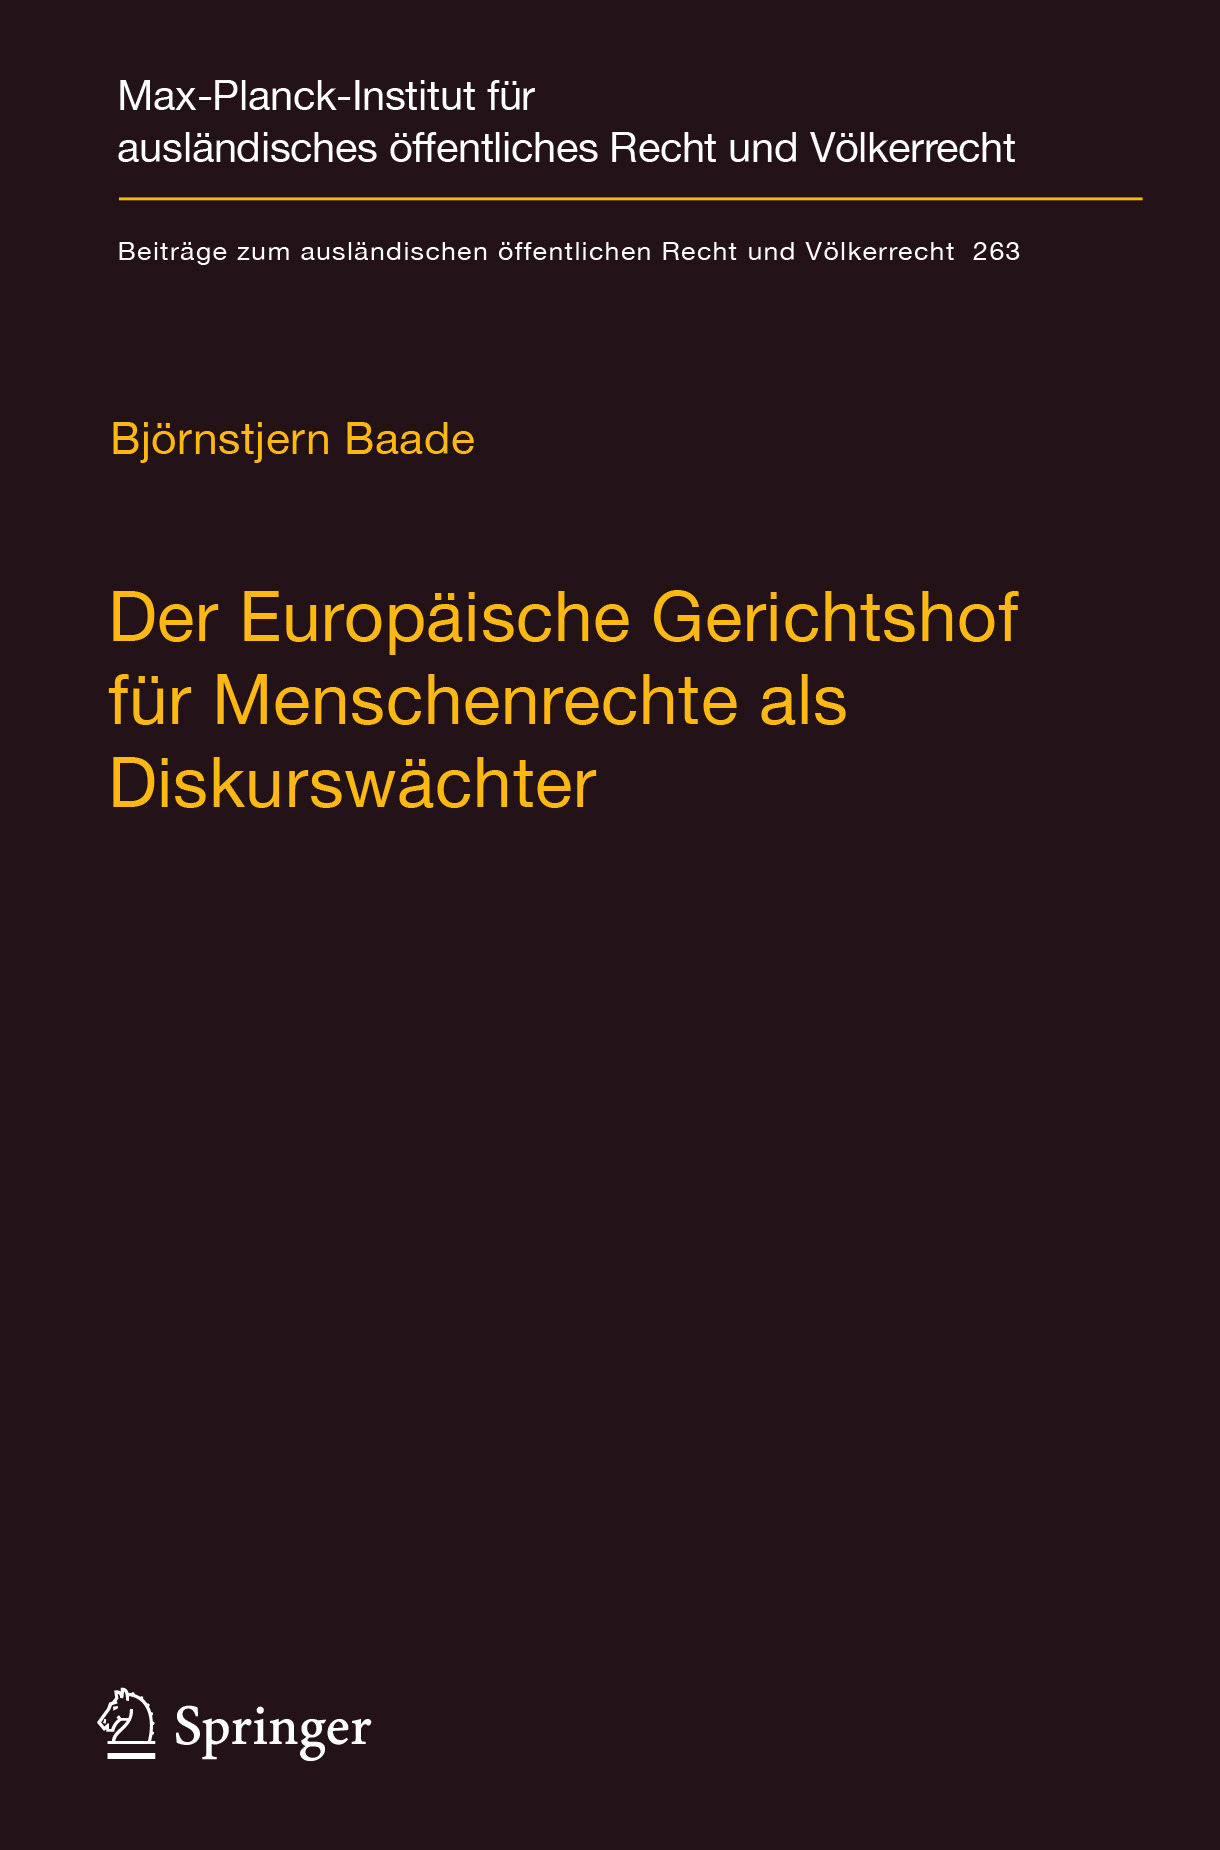 Baade, Björnstjern - Der Europäische Gerichtshof für Menschenrechte als Diskurswächter, ebook